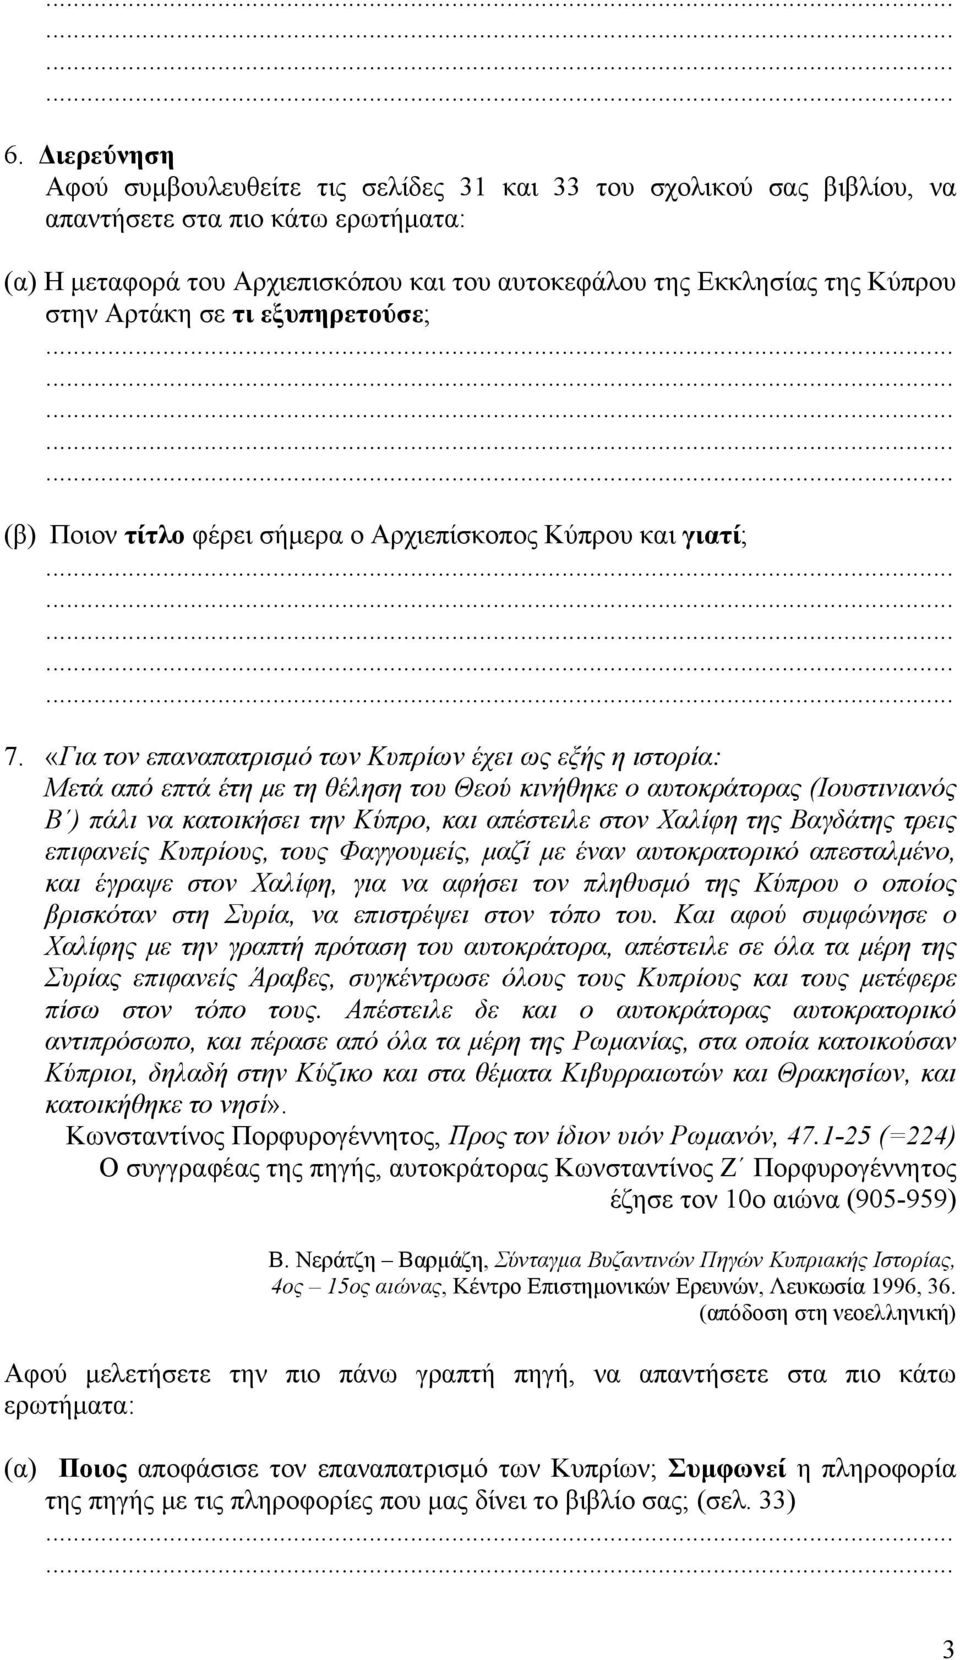 «Για τον επαναπατρισμό των Κυπρίων έχει ως εξής η ιστορία: Μετά από επτά έτη με τη θέληση του Θεού κινήθηκε ο αυτοκράτορας (Ιουστινιανός Β ) πάλι να κατοικήσει την Κύπρο, και απέστειλε στον Χαλίφη